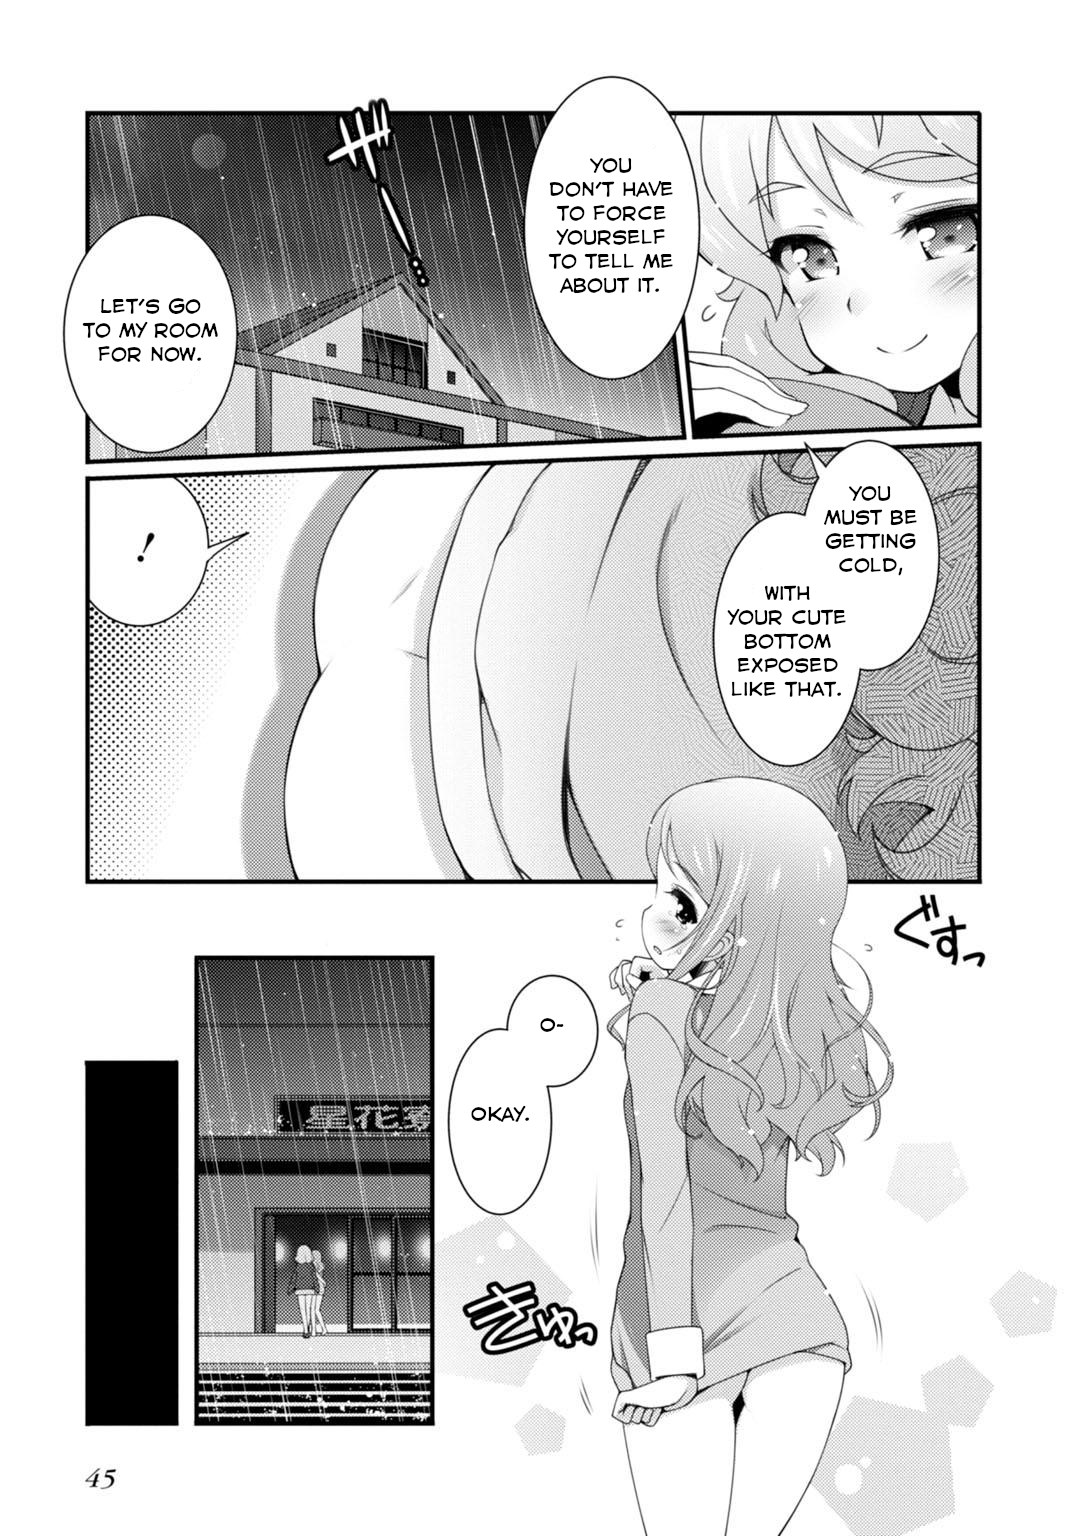 Sakura Nadeshiko - Page 3